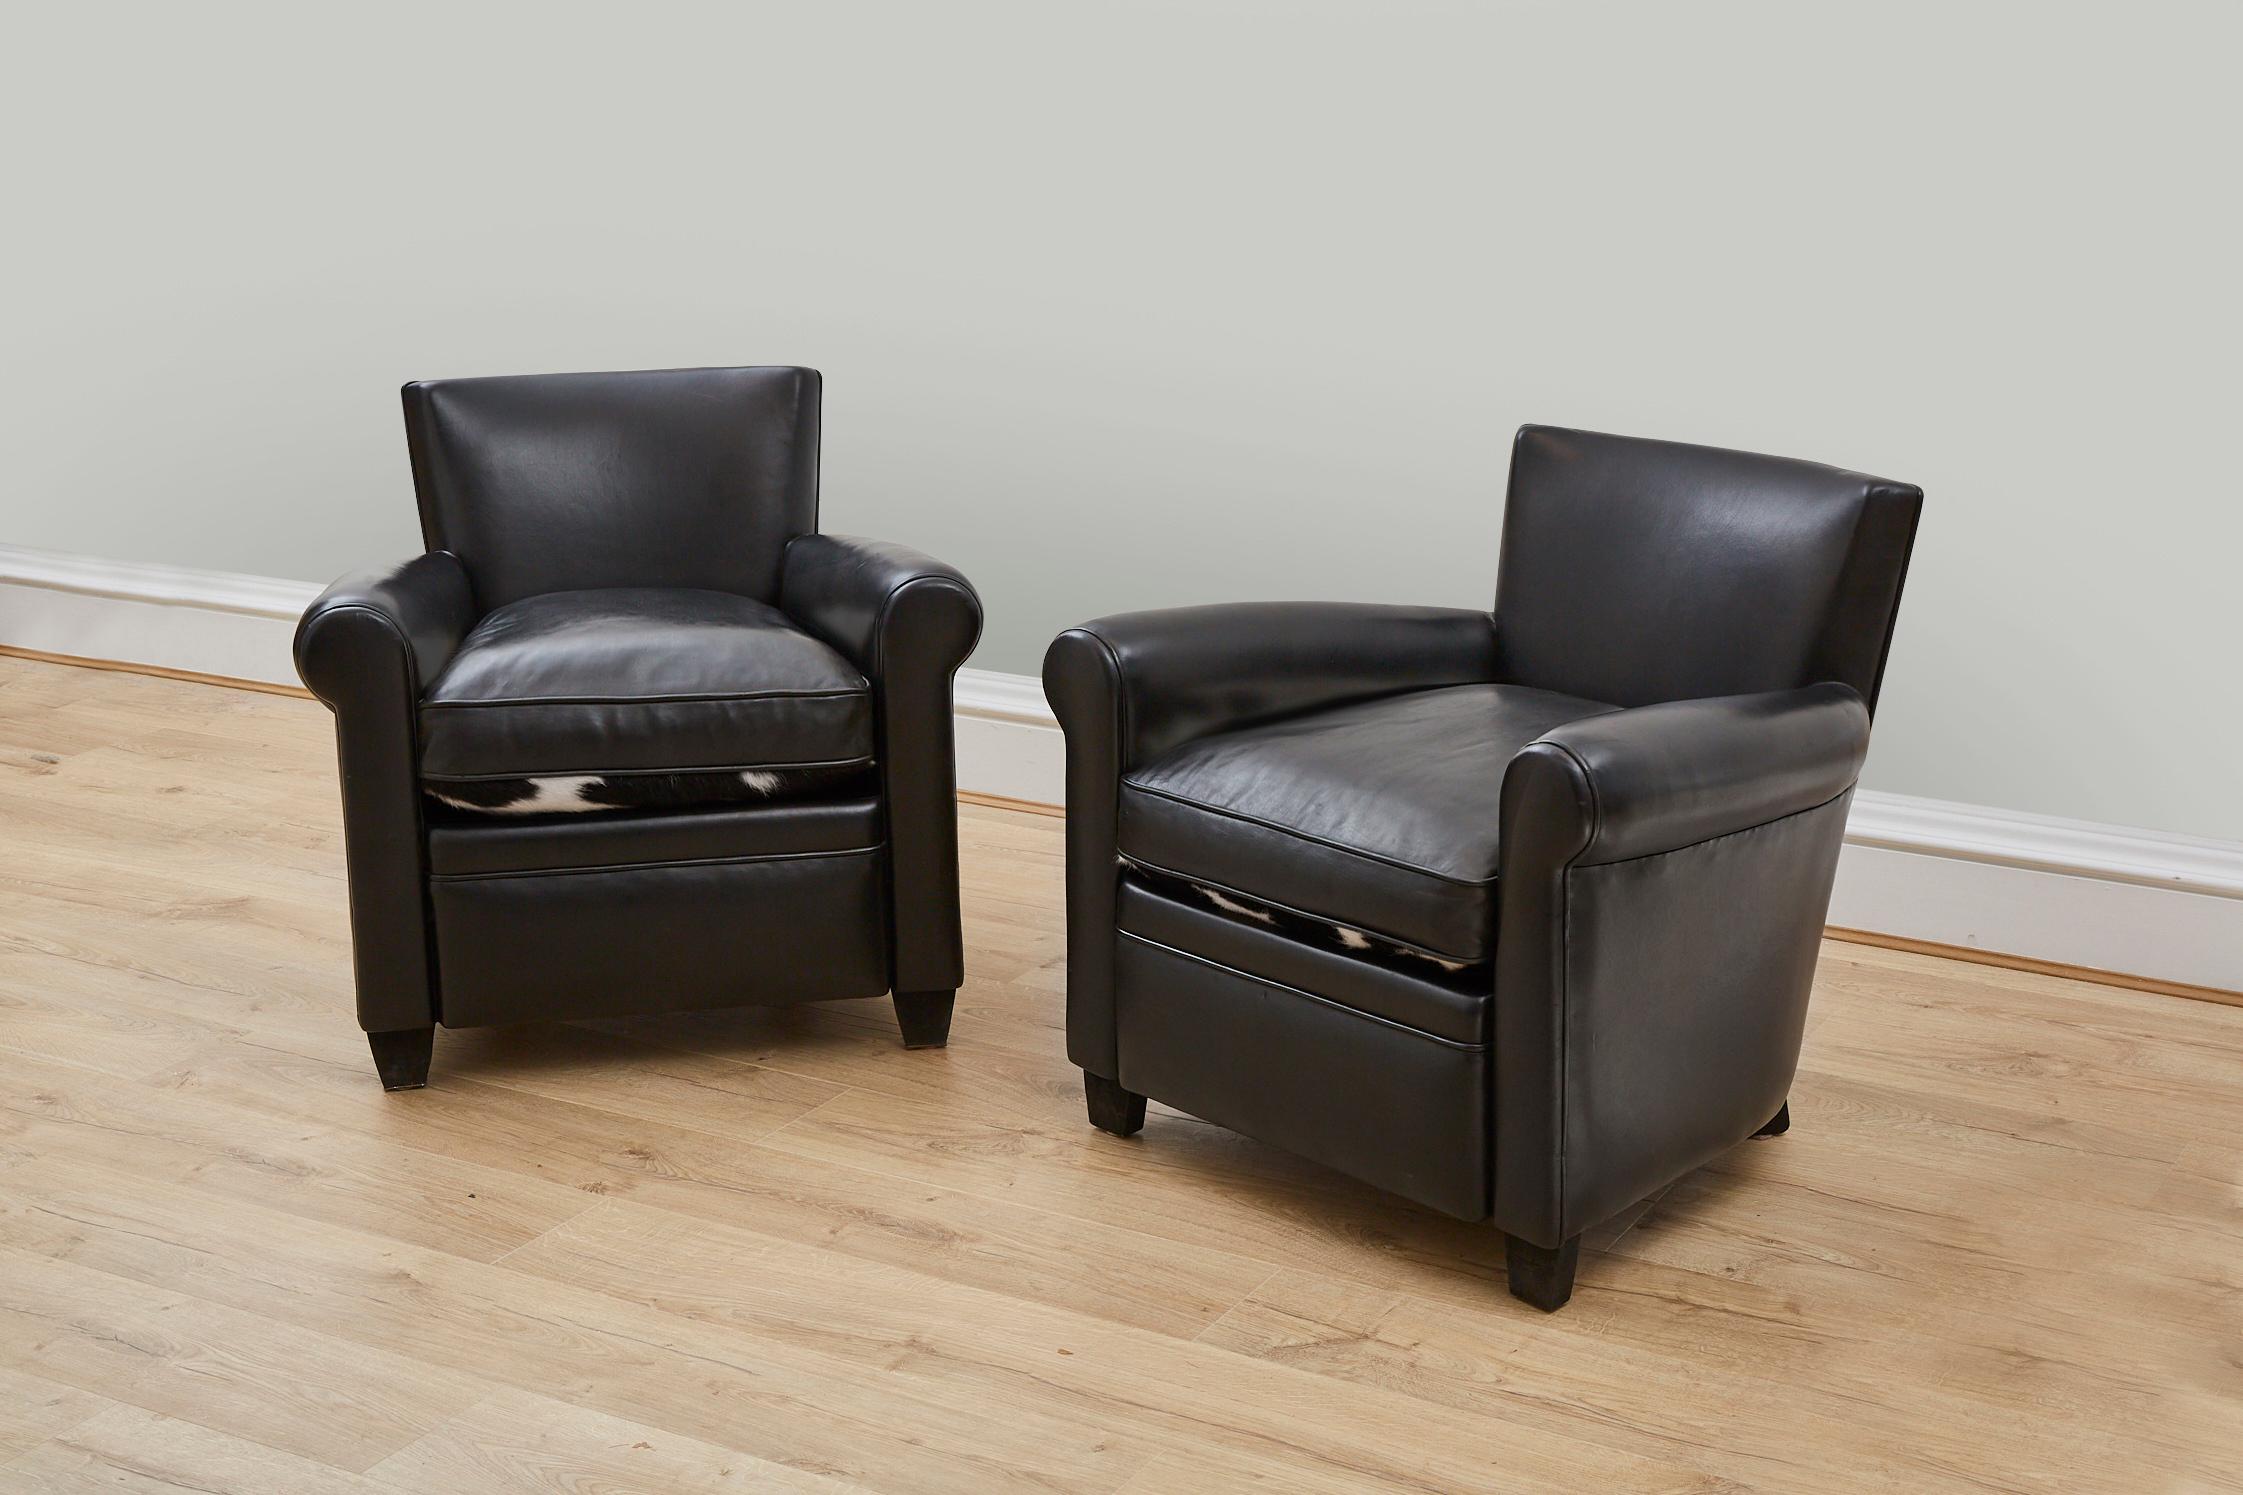 Ein stilvolles Paar schwarzer Ledersessel mit wendbaren Sitzen - schwarzes Leder auf der einen und schwarz-weißes Naturrindsleder auf der anderen Seite. 

Diese Stühle wurden nach traditionellen Methoden handgefertigt - mit Stahlnieten an der